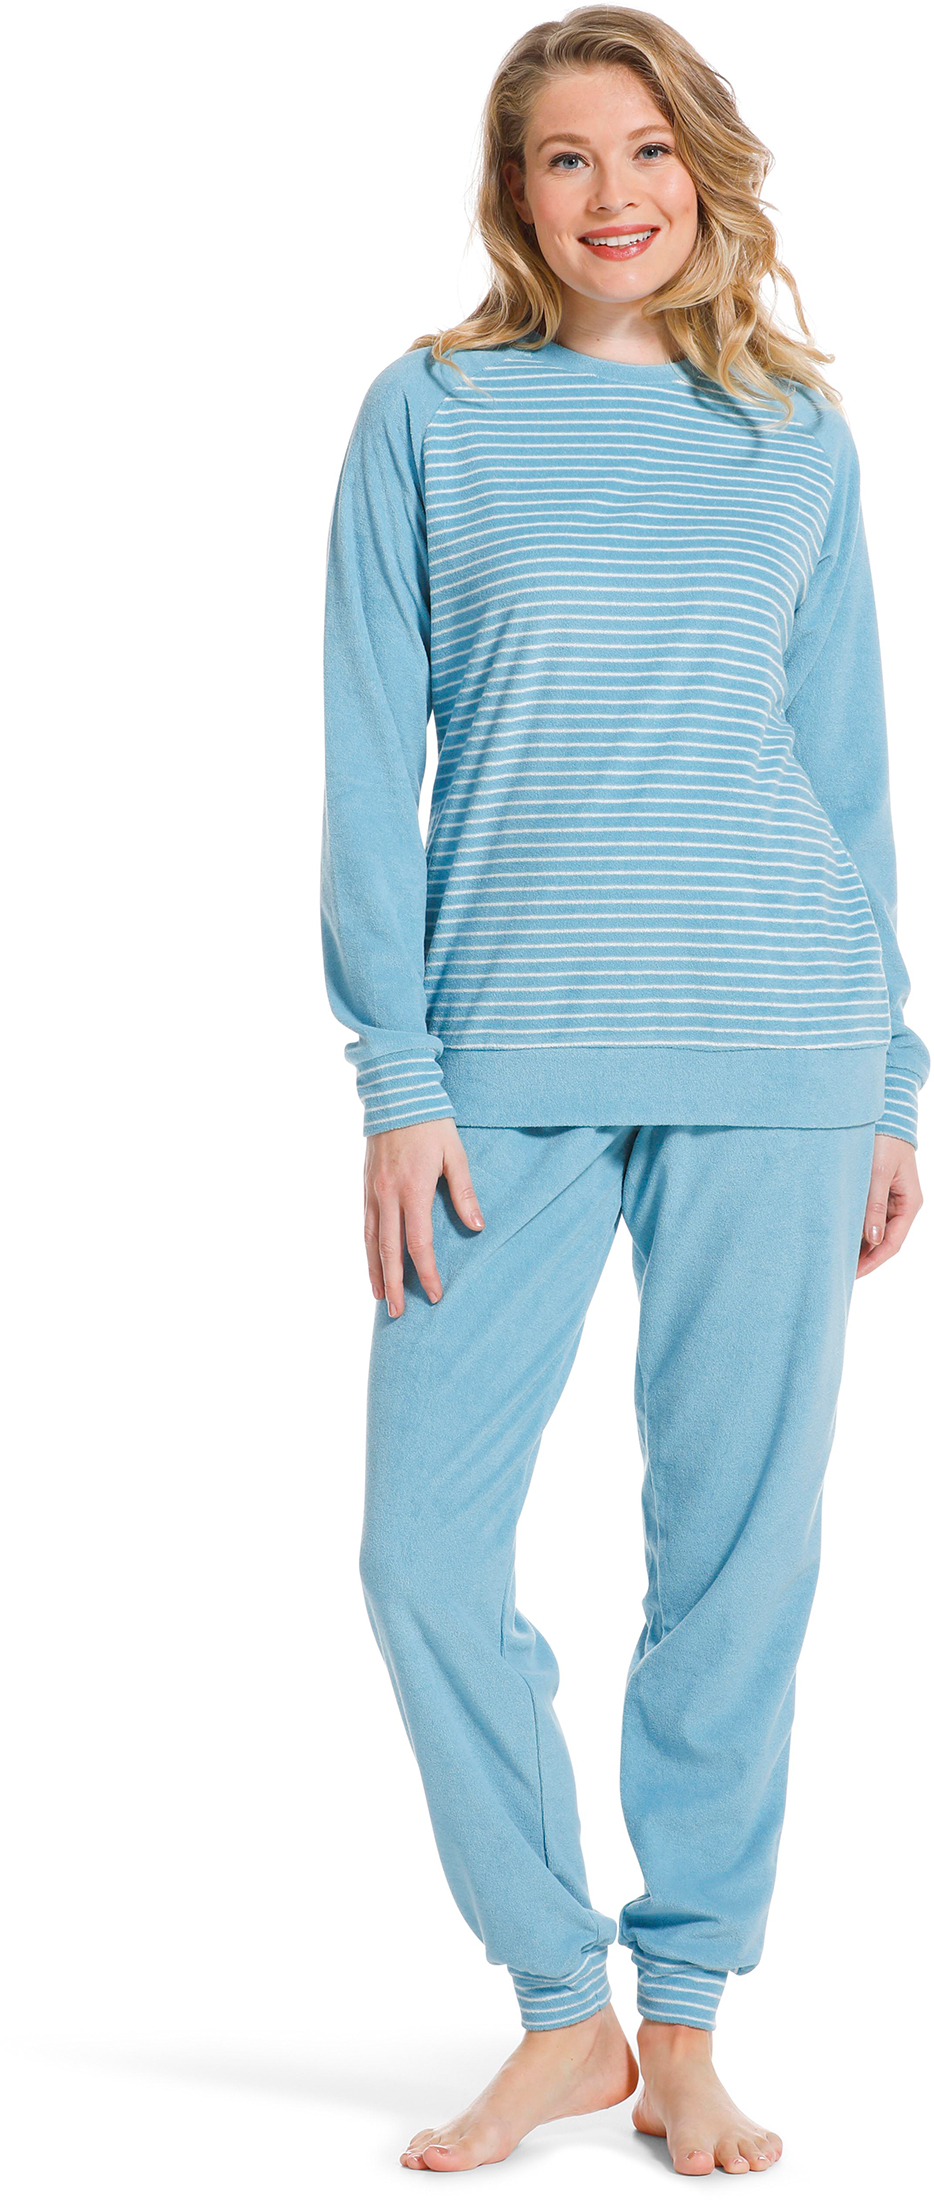 Pastunette badstof dames pyjama 20222-144-2 - Blauw - 40